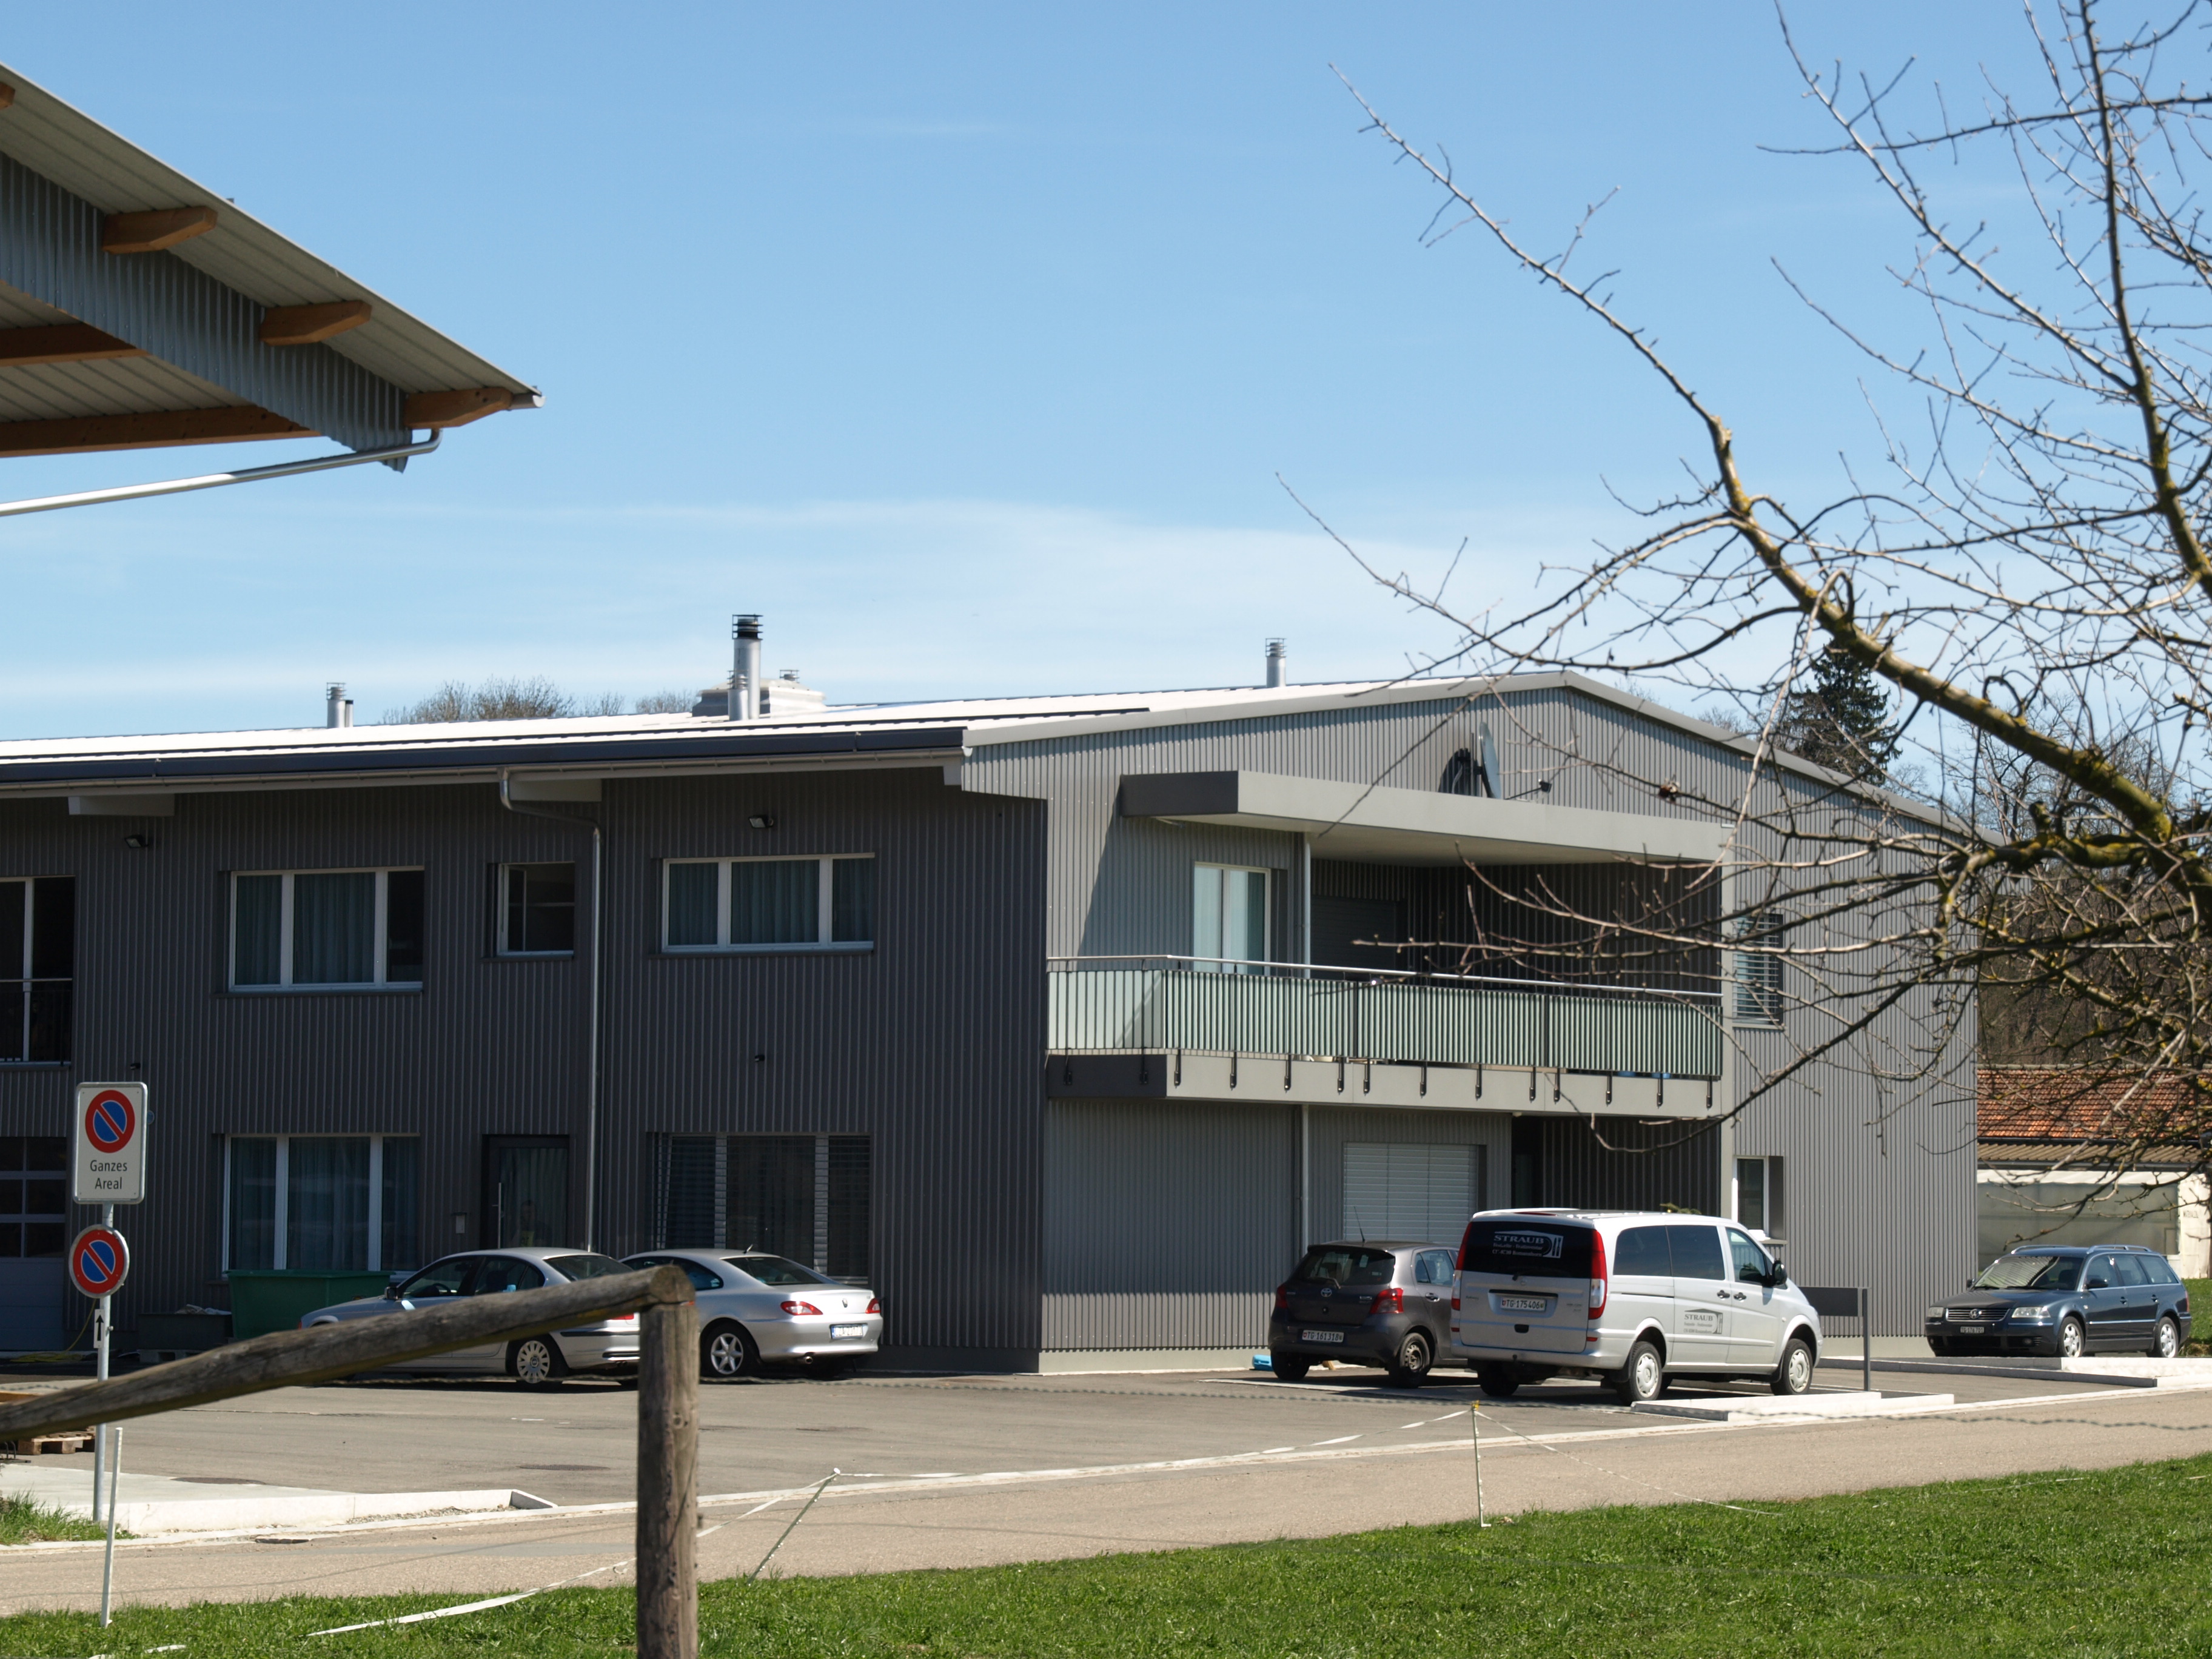 Minergie Gewerbe- und Wohnbau in vorfabriziertem Holzrahmenbau
Gesundheitszentrum mit Therapiebad, Praxen und Restauration